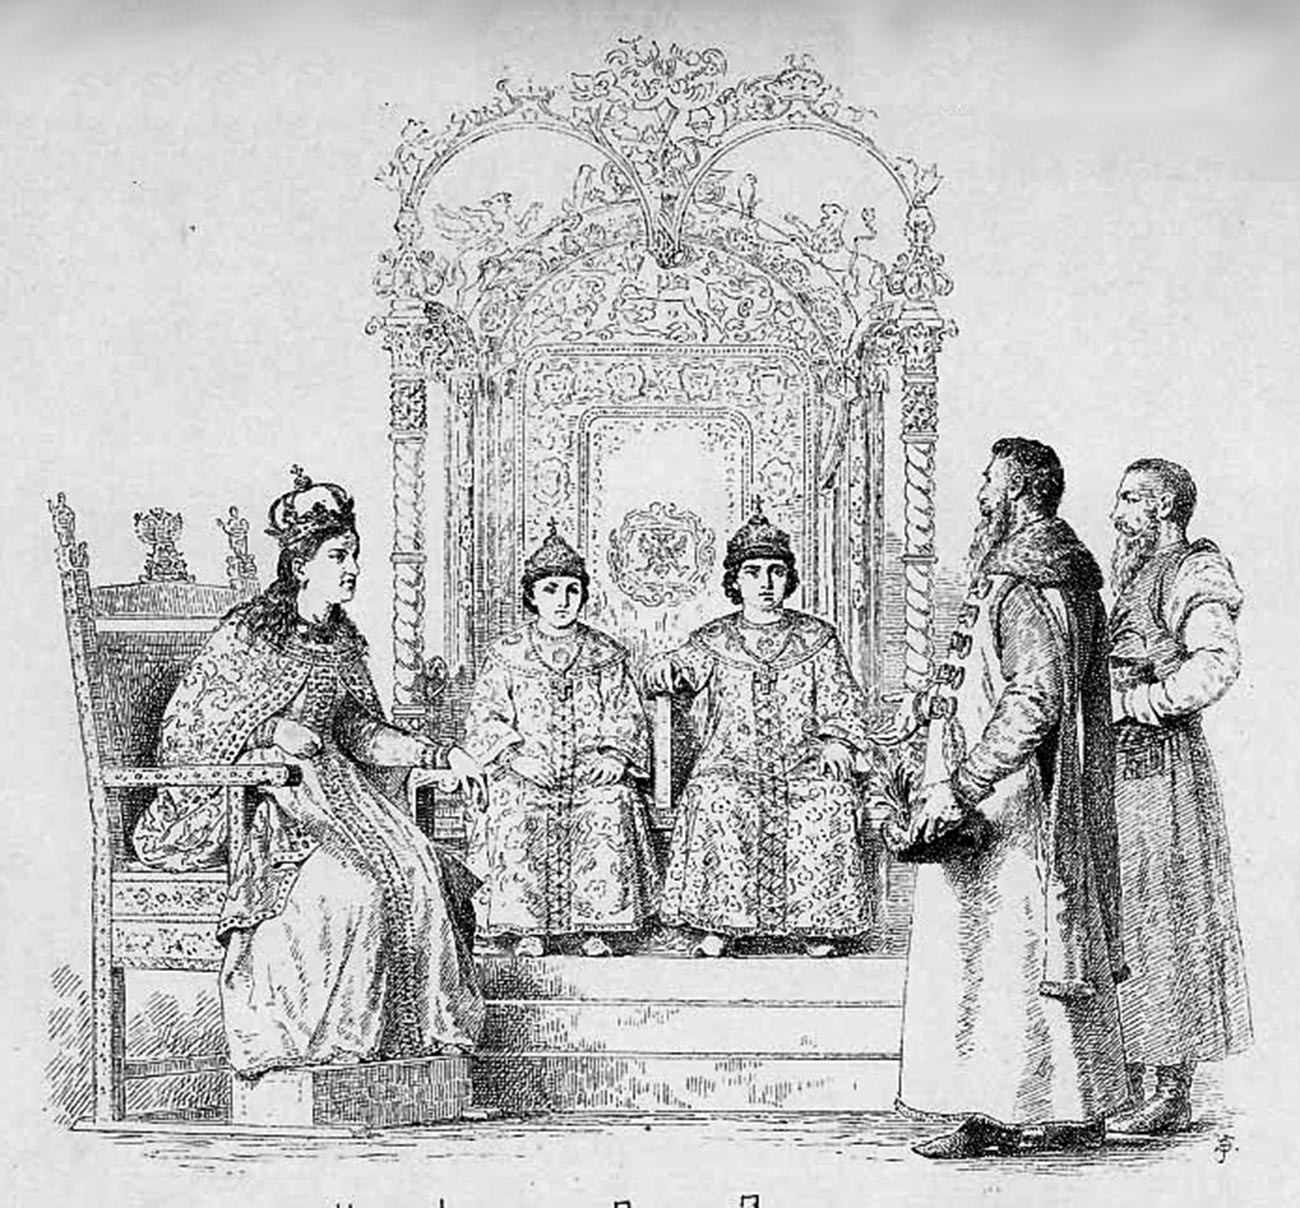 Die Zaren Iwan und Peter und die Regentin Sophia